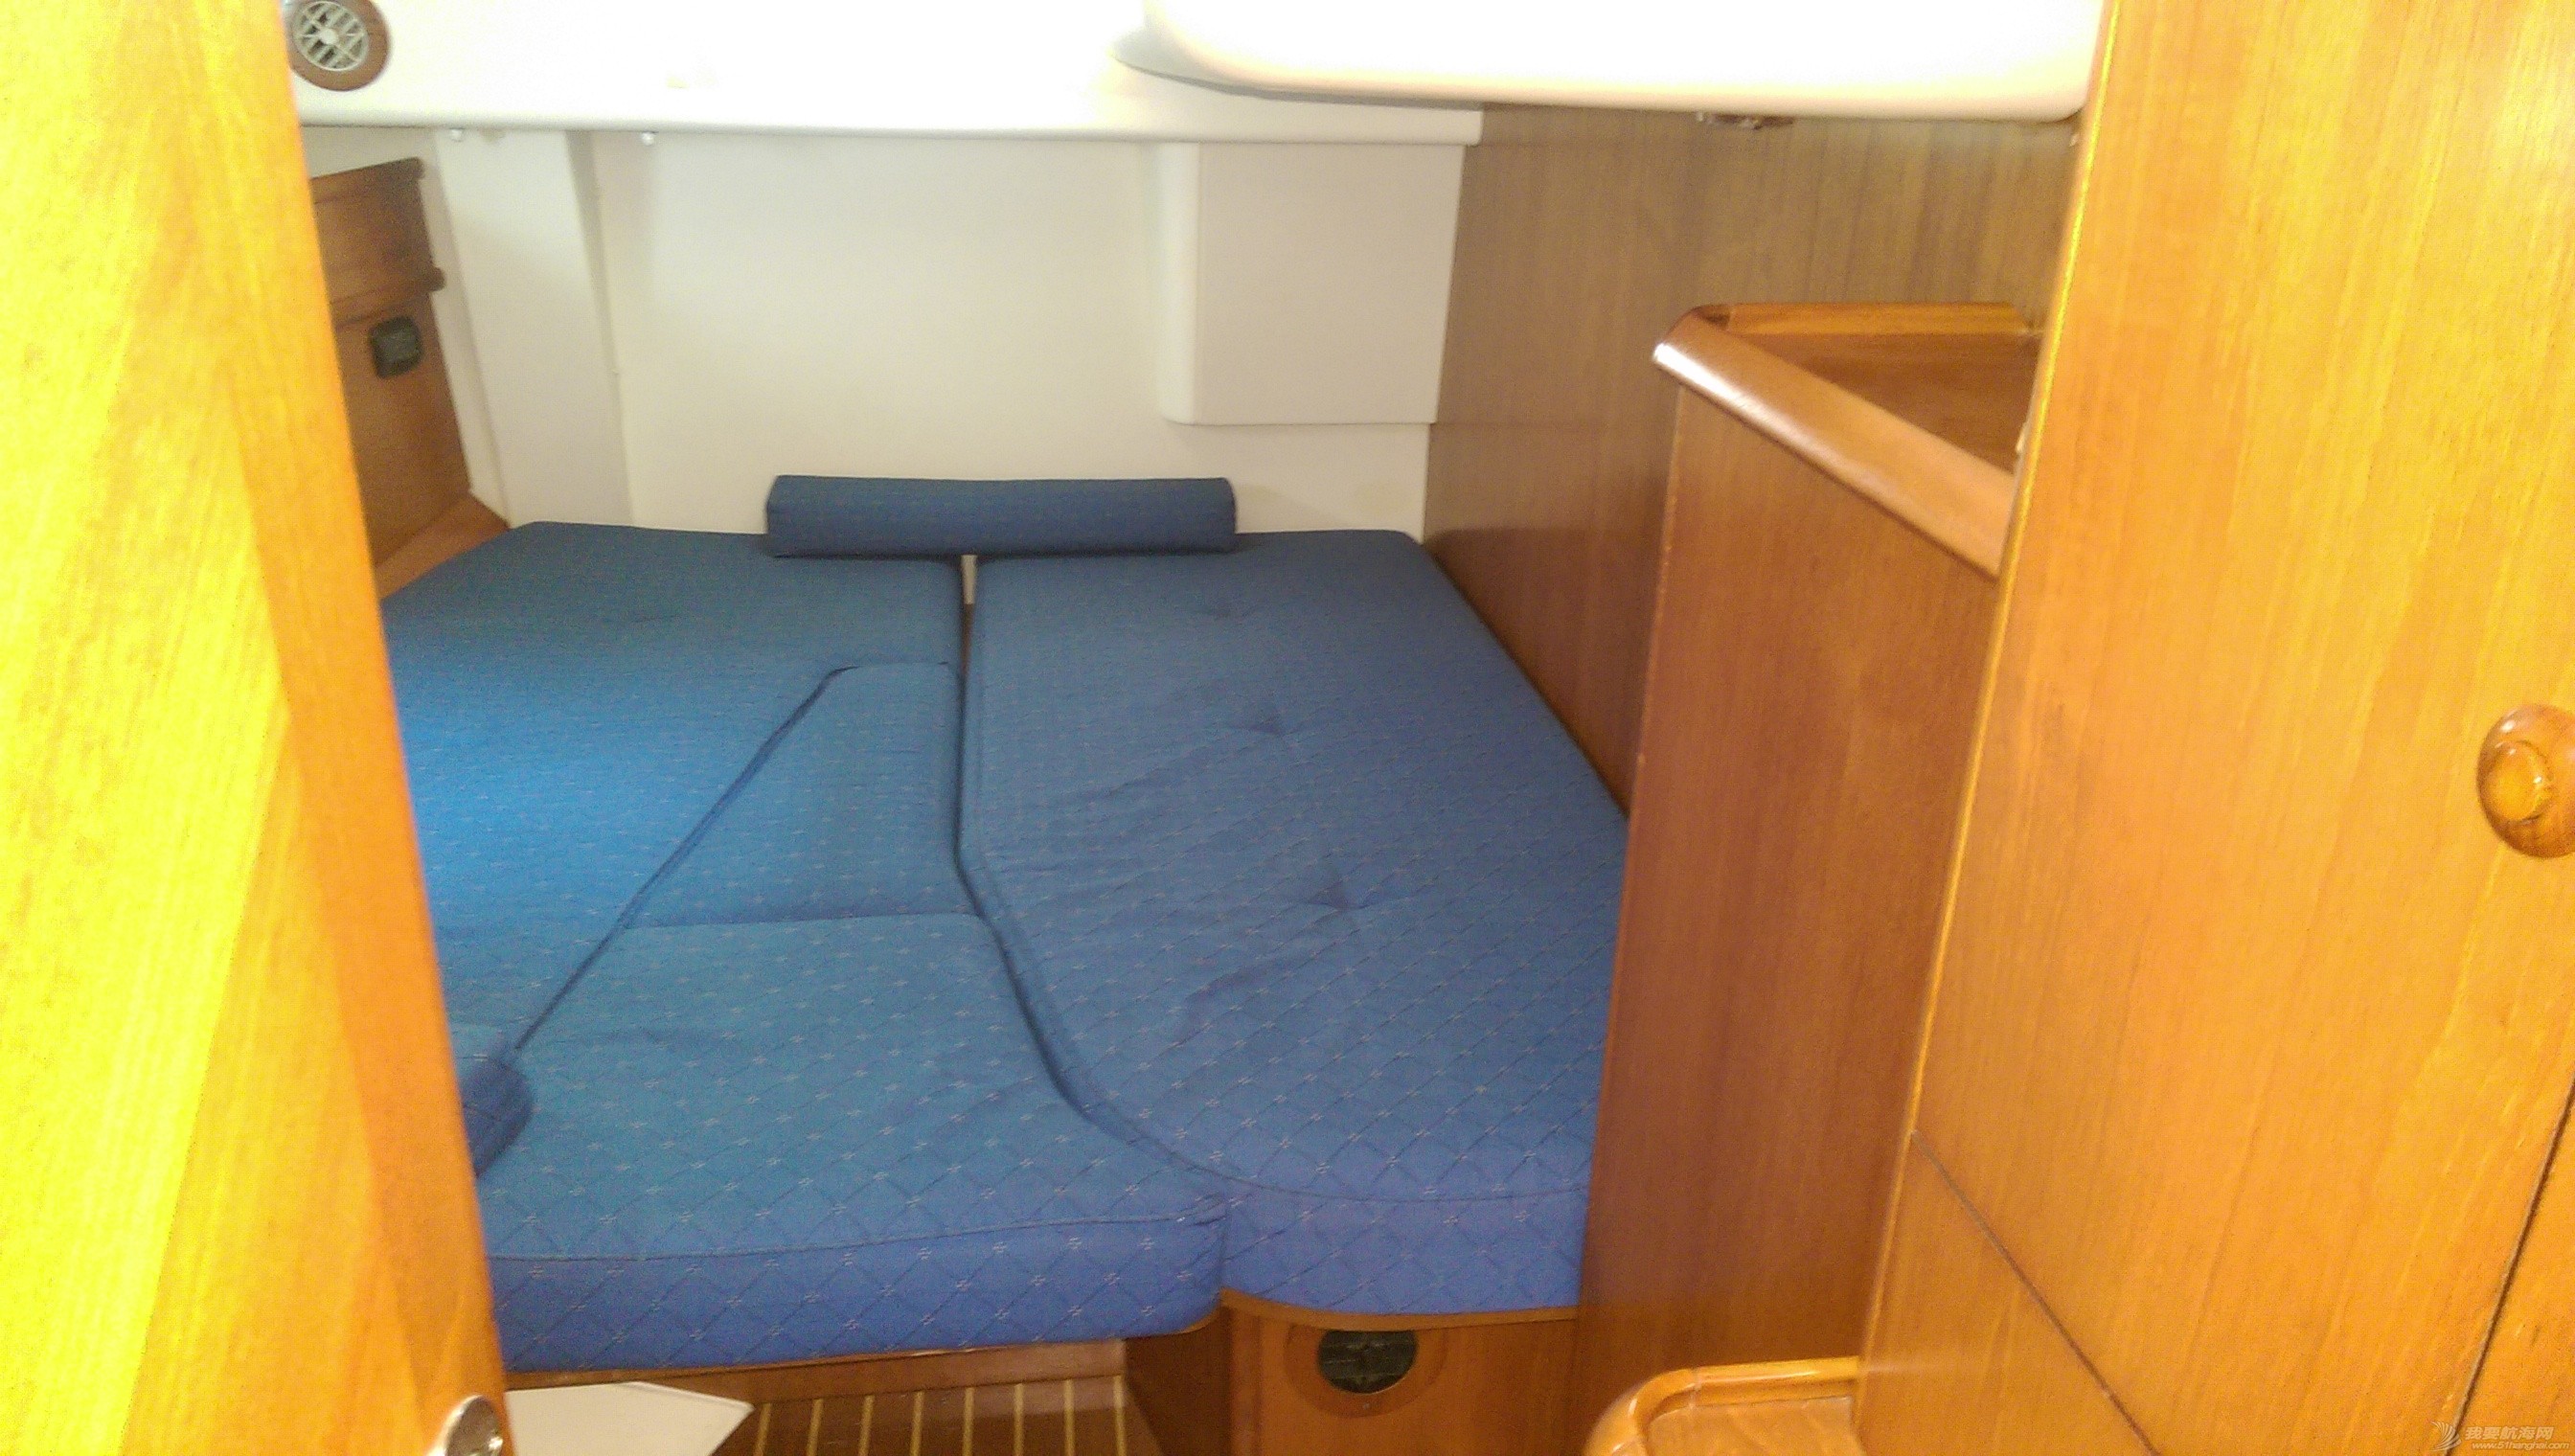 後艙位臥室可以雙人大床，單人雙床，兩個房間的隔板可以拿掉變成大倉兩邊床變沙發，中間變大床